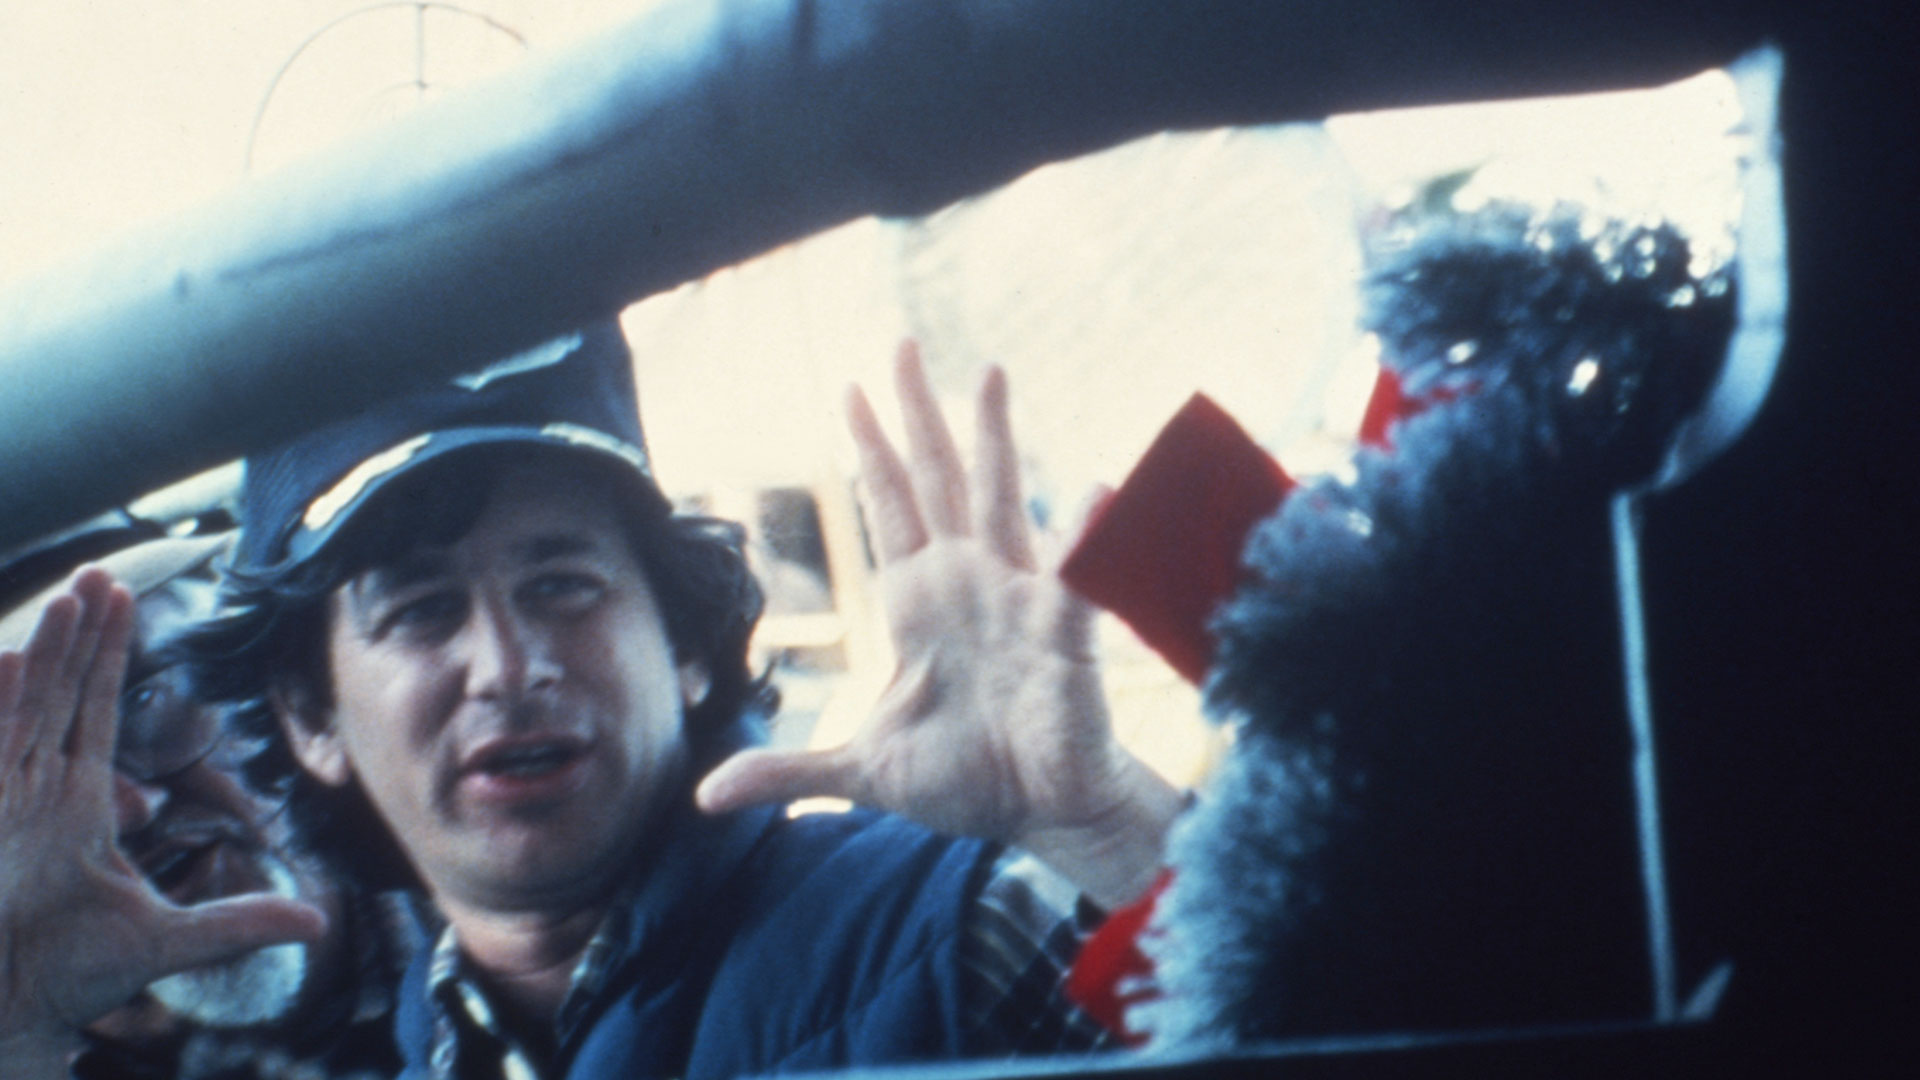 Las películas de Spielberg siempre son éxitos de taquilla, sin embargo algunas críticas señalan que a menudo caen en el sentimentalismo excesivo y en la tendencia a simplificar o dramatizar hechos históricos (Foto: Getty Images)